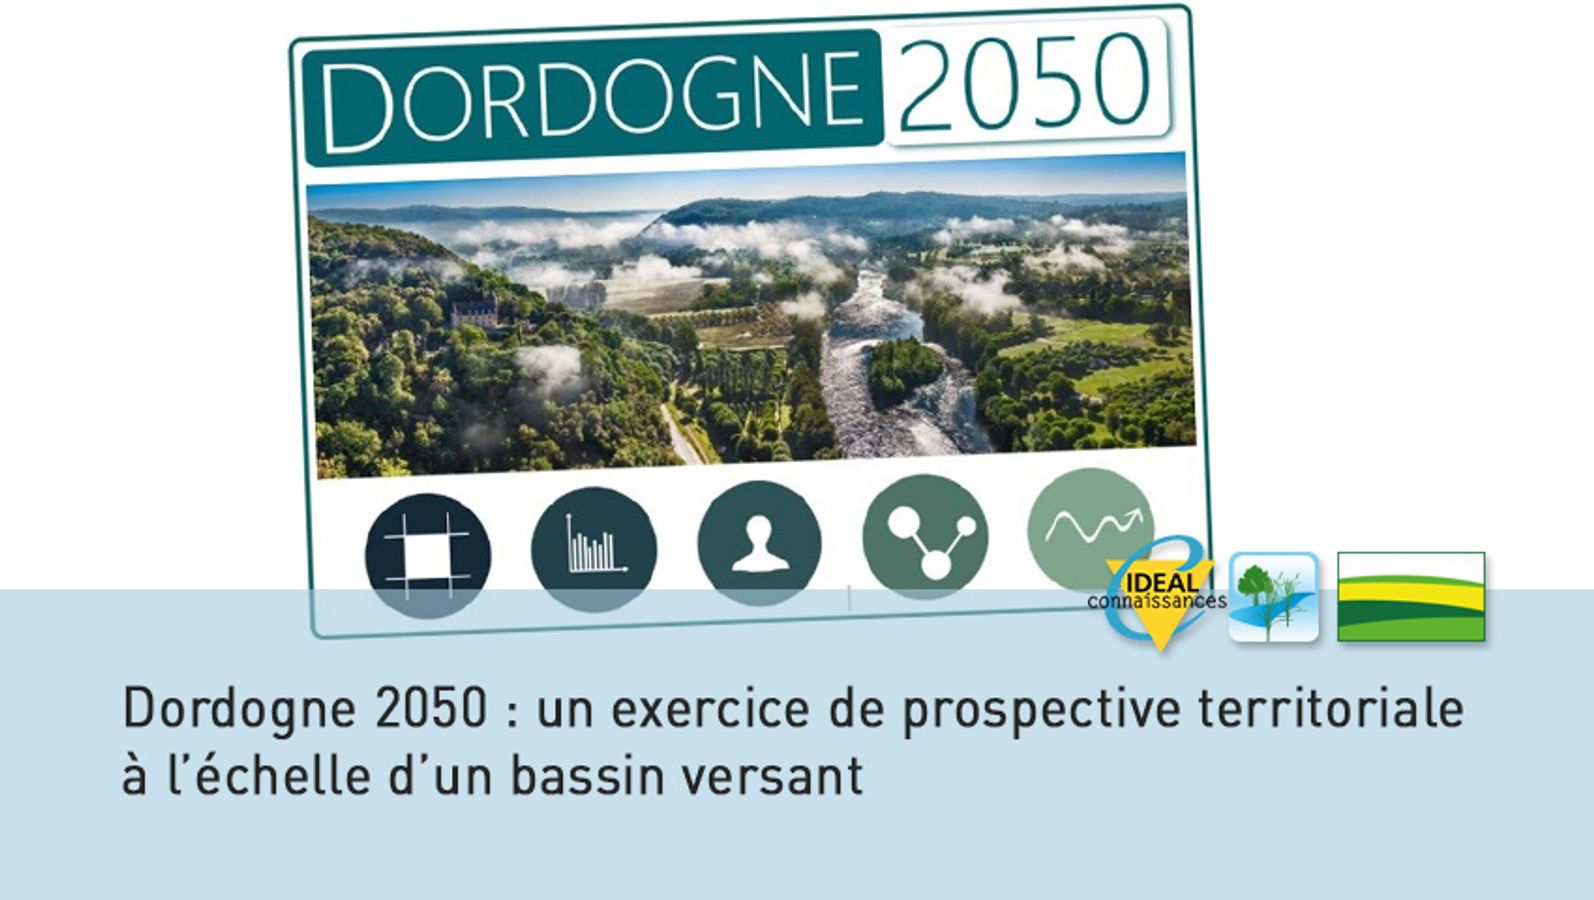 Dordogne 2050 : un exercice de prospective territoriale à l’échelle d’un bassin versant